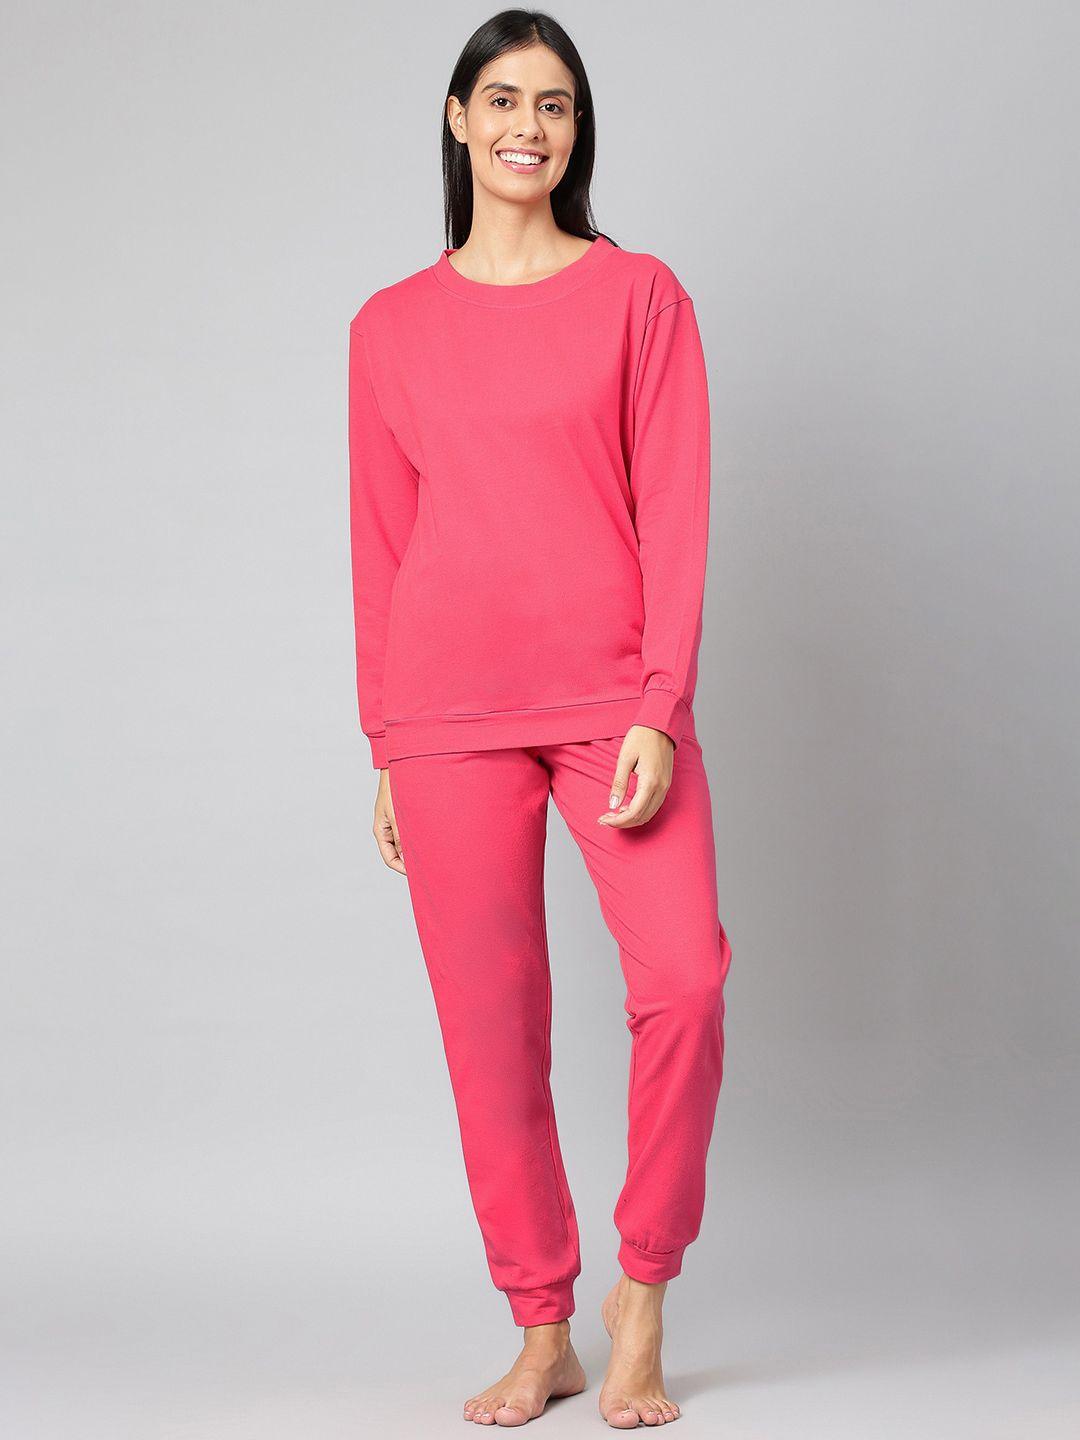 finsbury-london-women-pink-solid-loungewear-co-ords